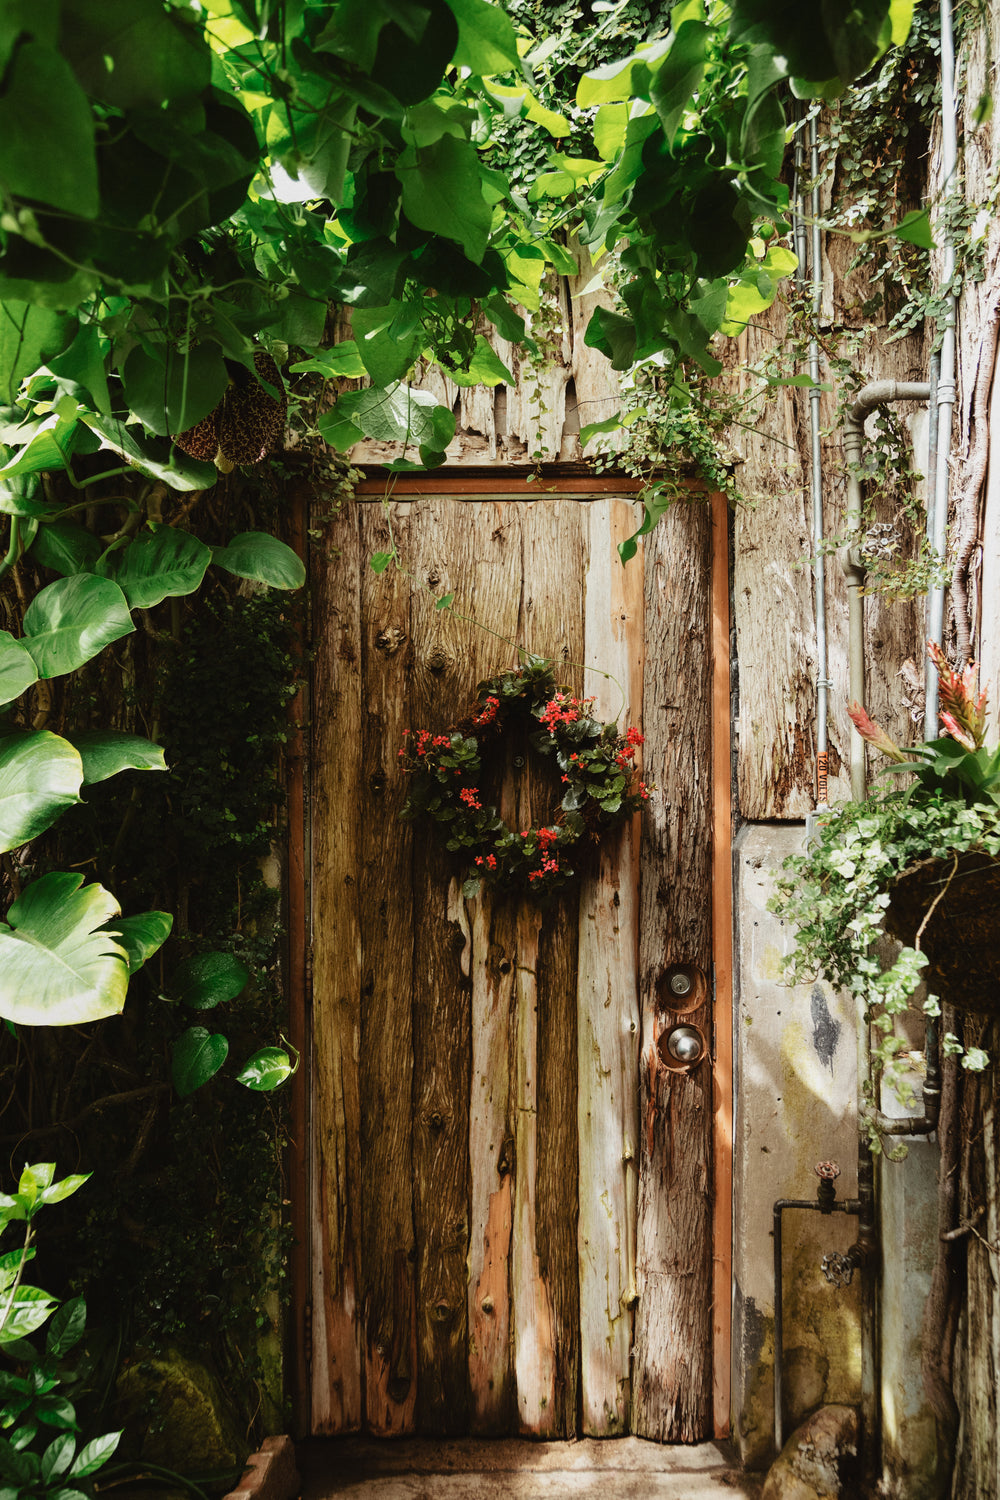 secret garden wooden door with wreath